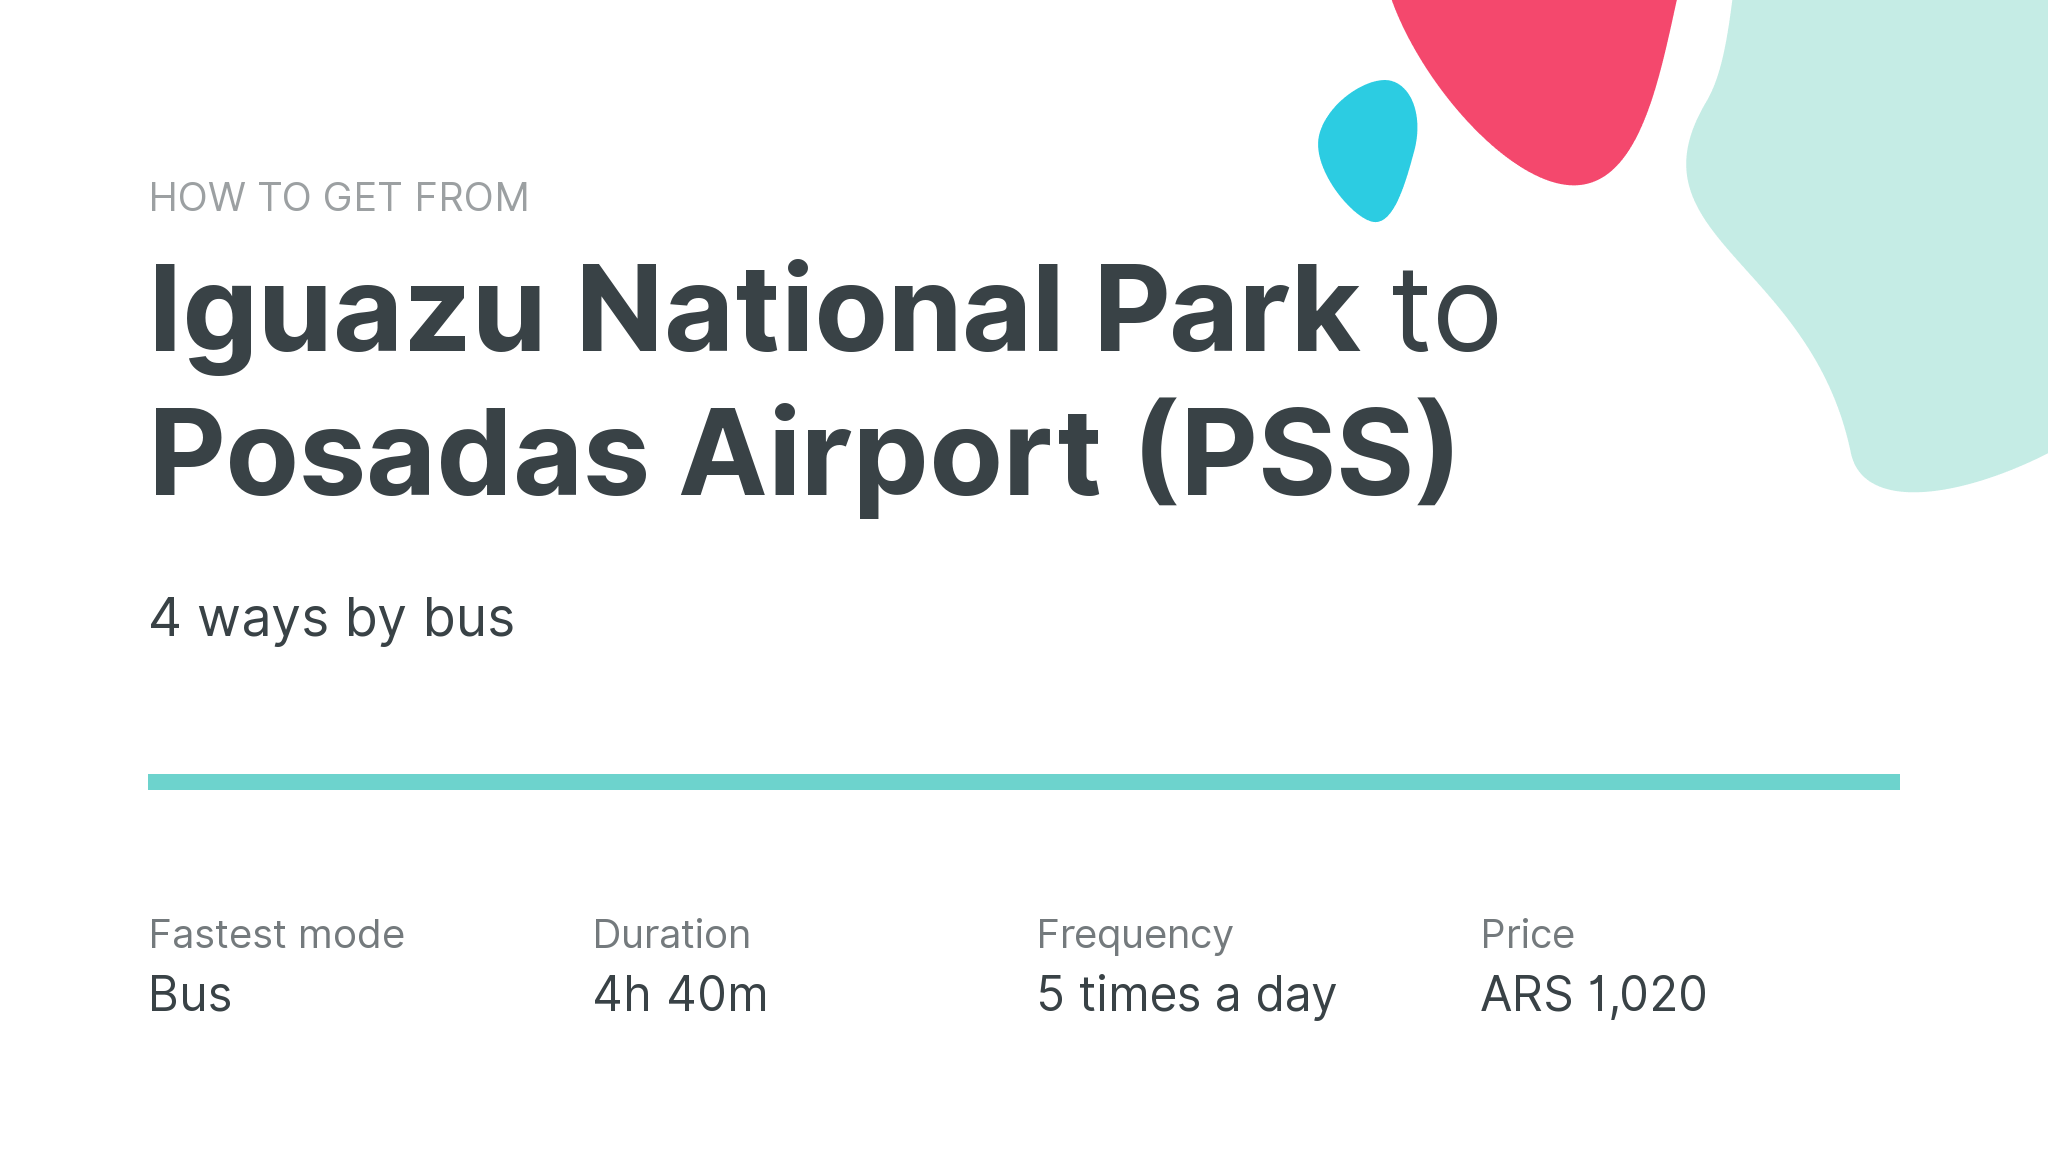 How do I get from Iguazu National Park to Posadas Airport (PSS)